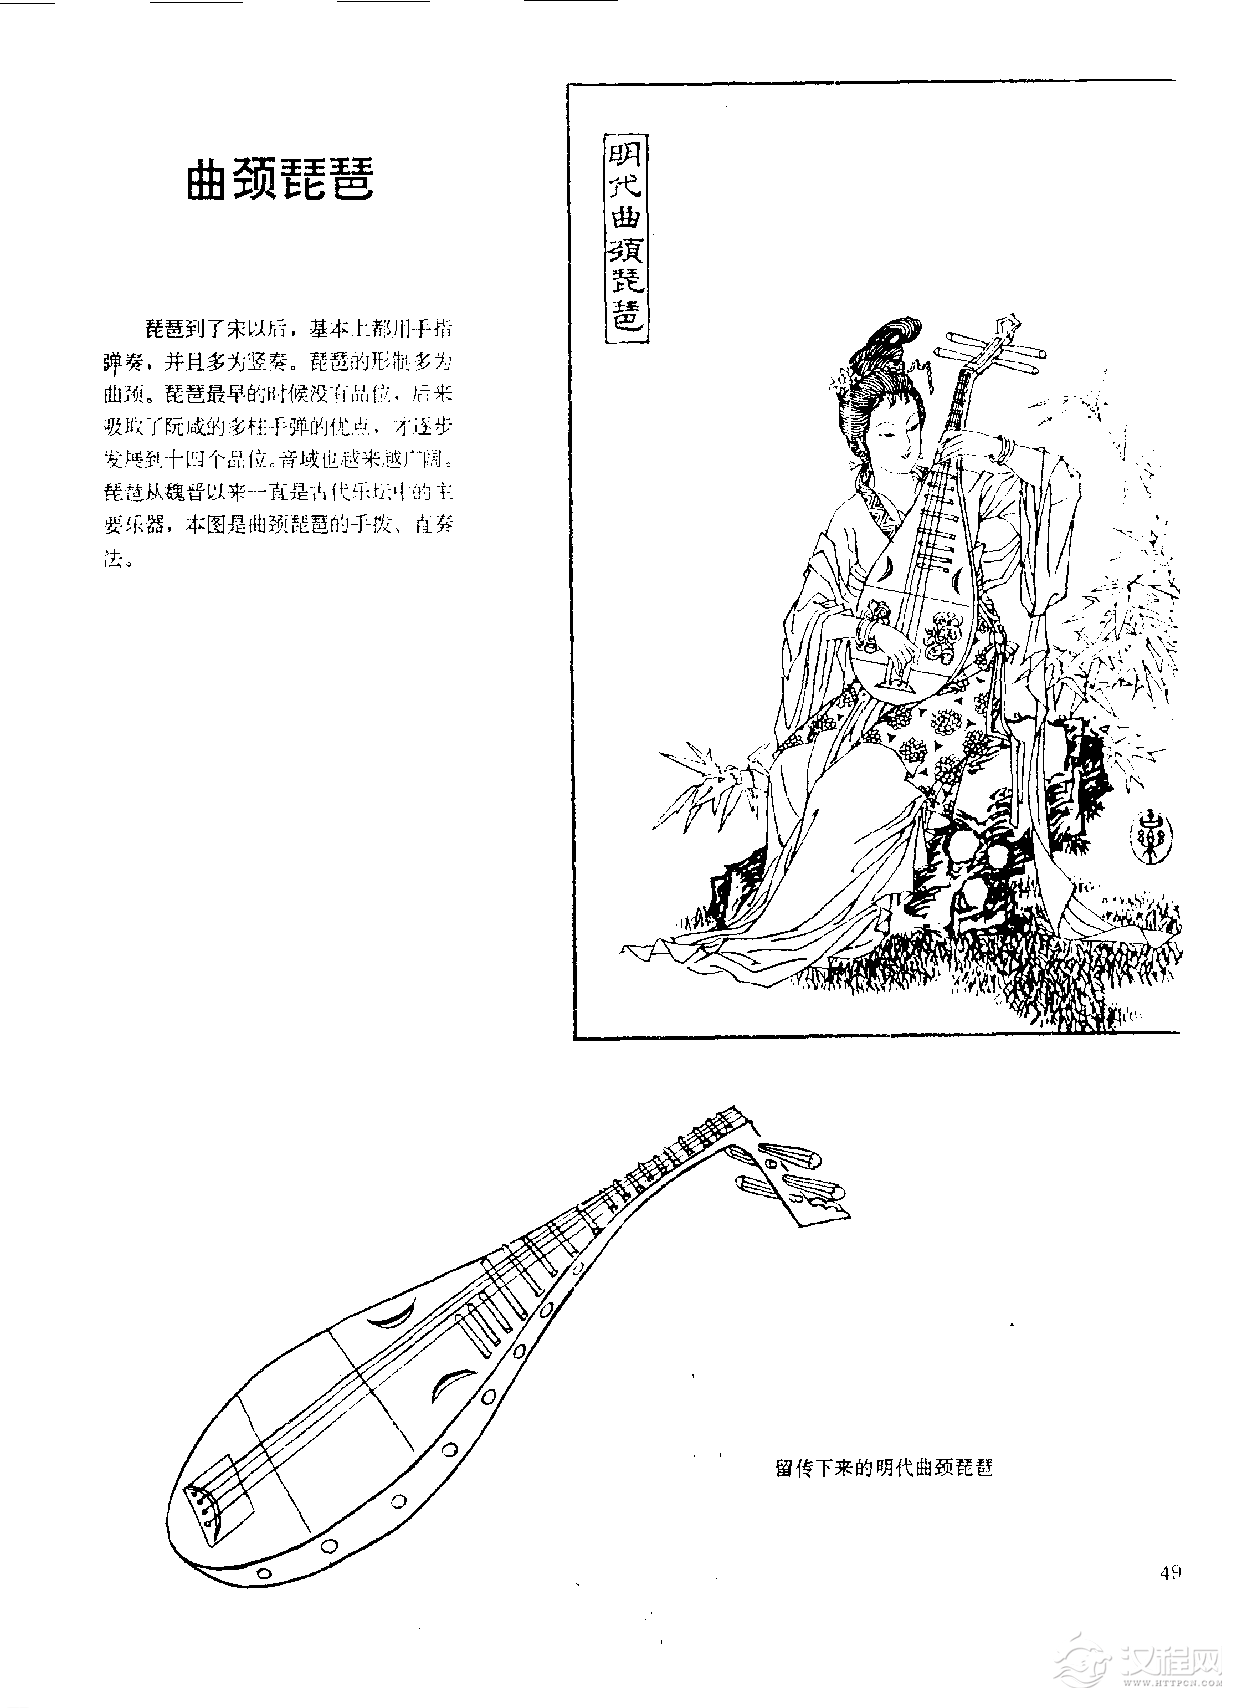 中国古代乐器《曲颈琵琶》